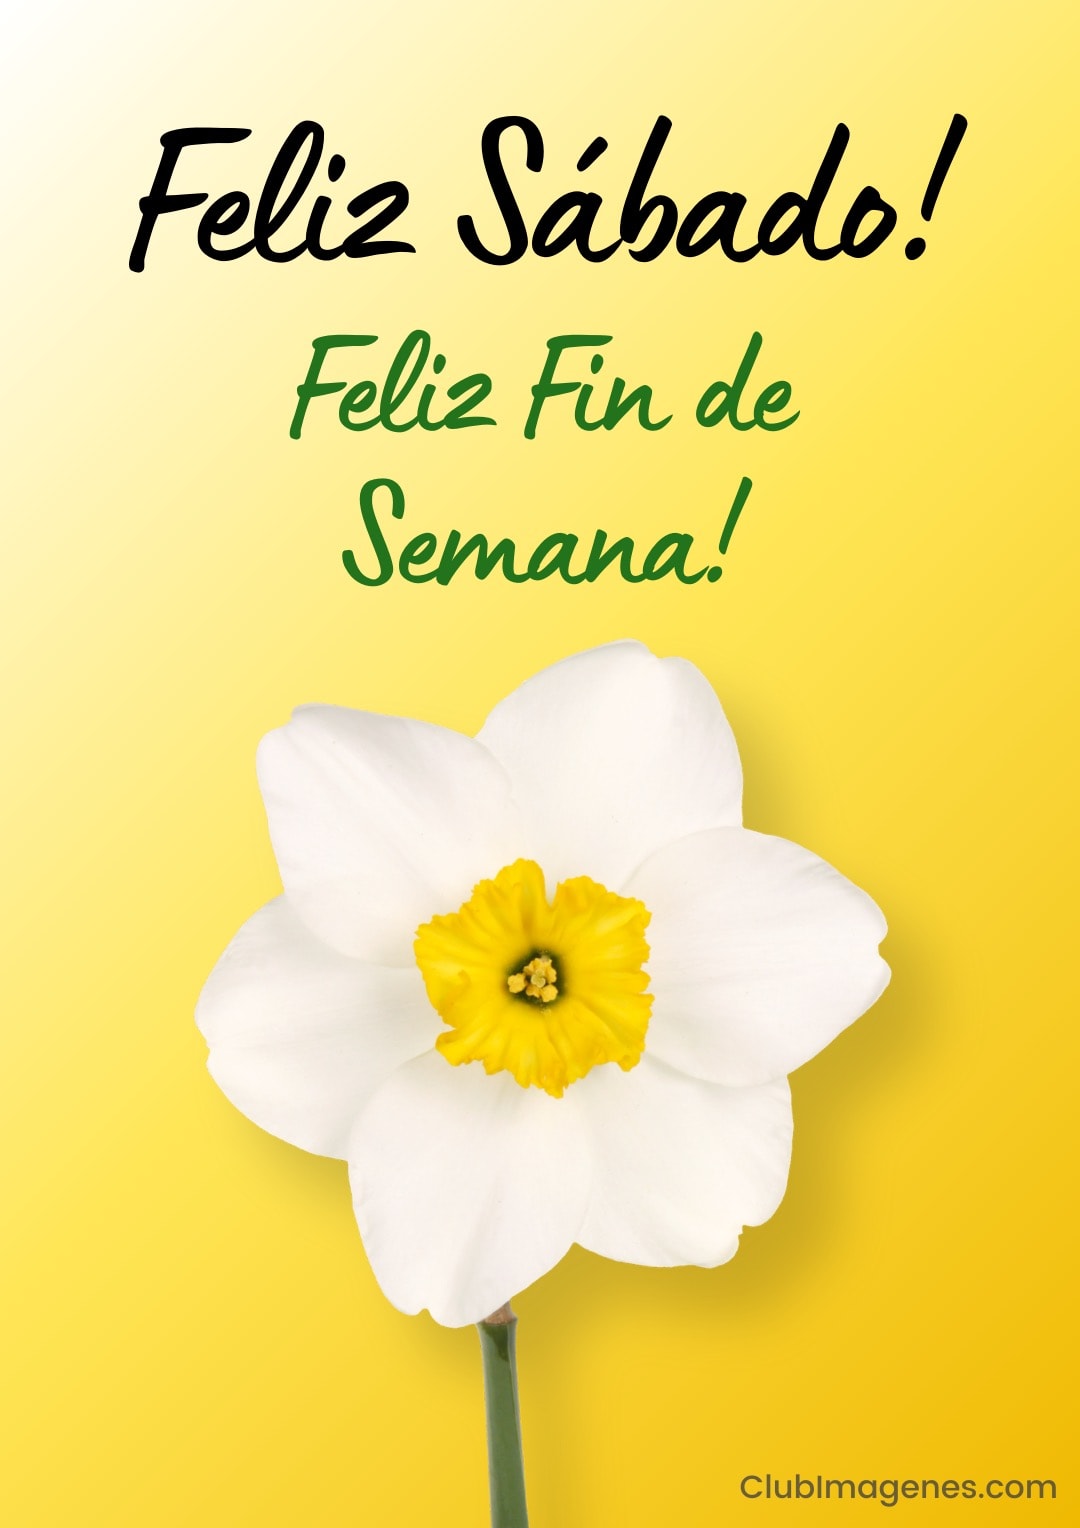 Narciso blanco sobre fondo amarillo con texto: Feliz Sábado y Feliz Fin de Semana!